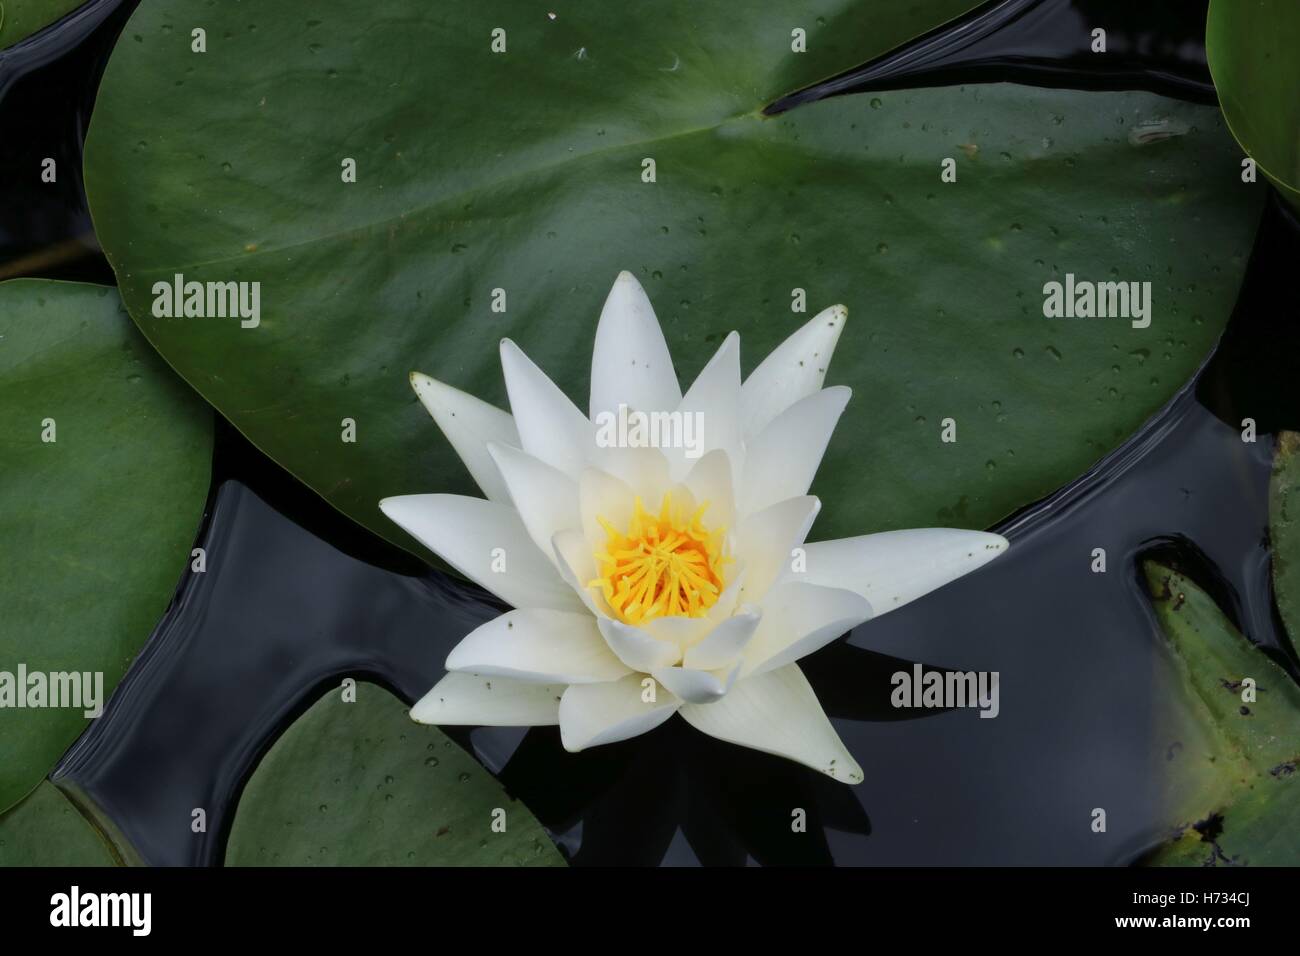 Ninfea nel laghetto in giardino disponibili in alta risoluzione e di diverse dimensioni per adattarsi alle esigenze del vostro progetto Foto Stock